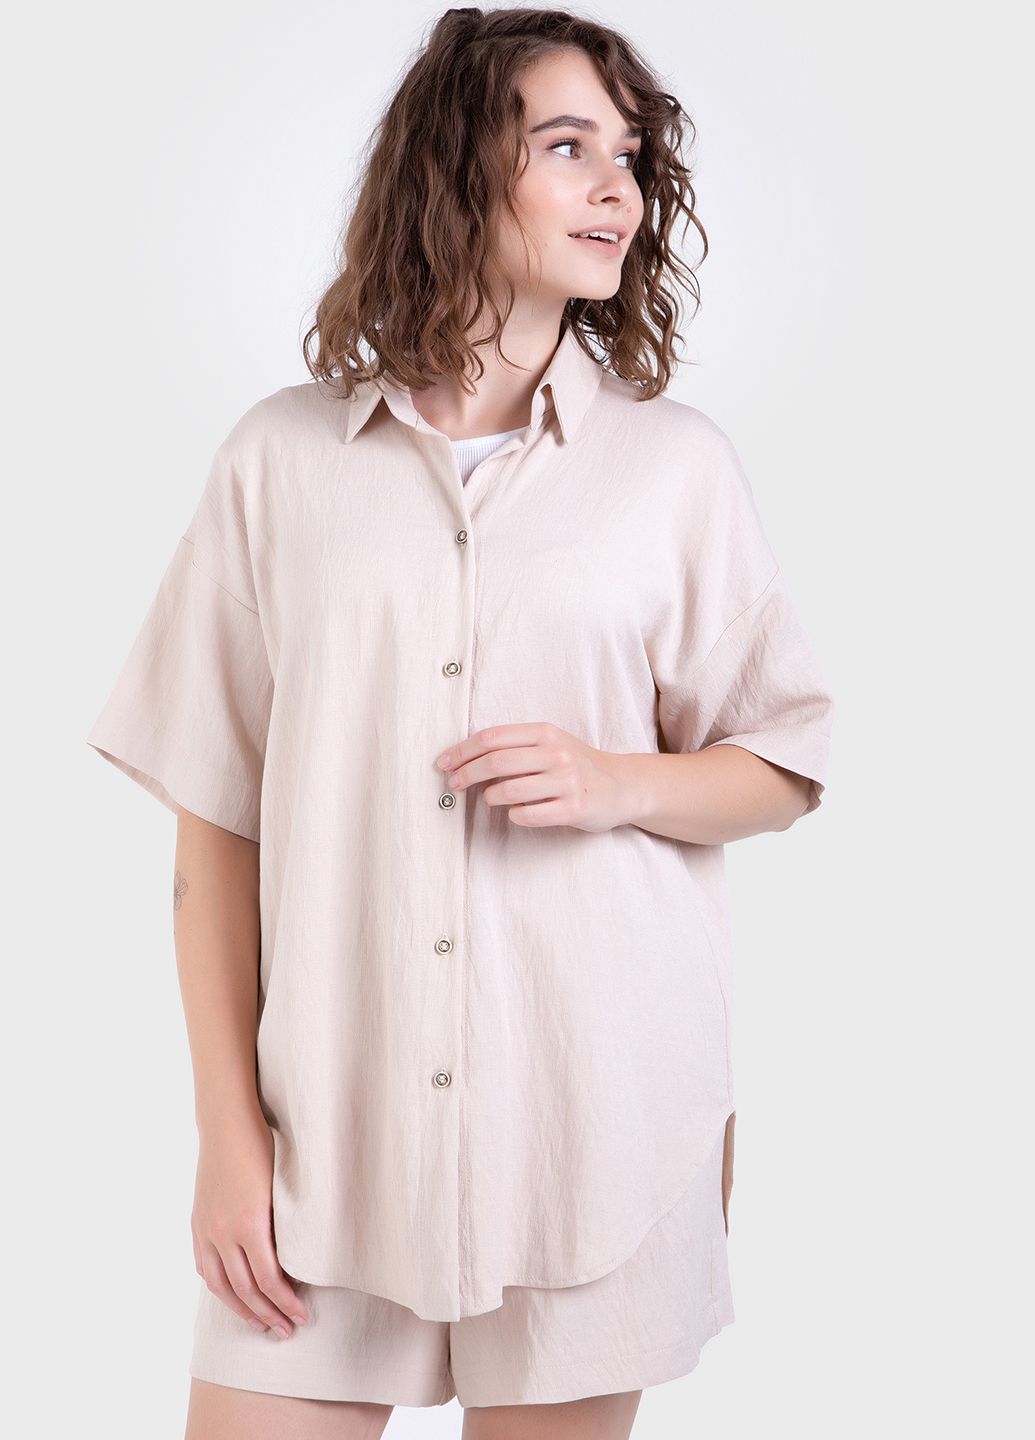 Купить Летний костюм женский двойка бежевого цвета: шорты, рубашка Merlini Мессина 100000145, размер 42-44 в интернет-магазине